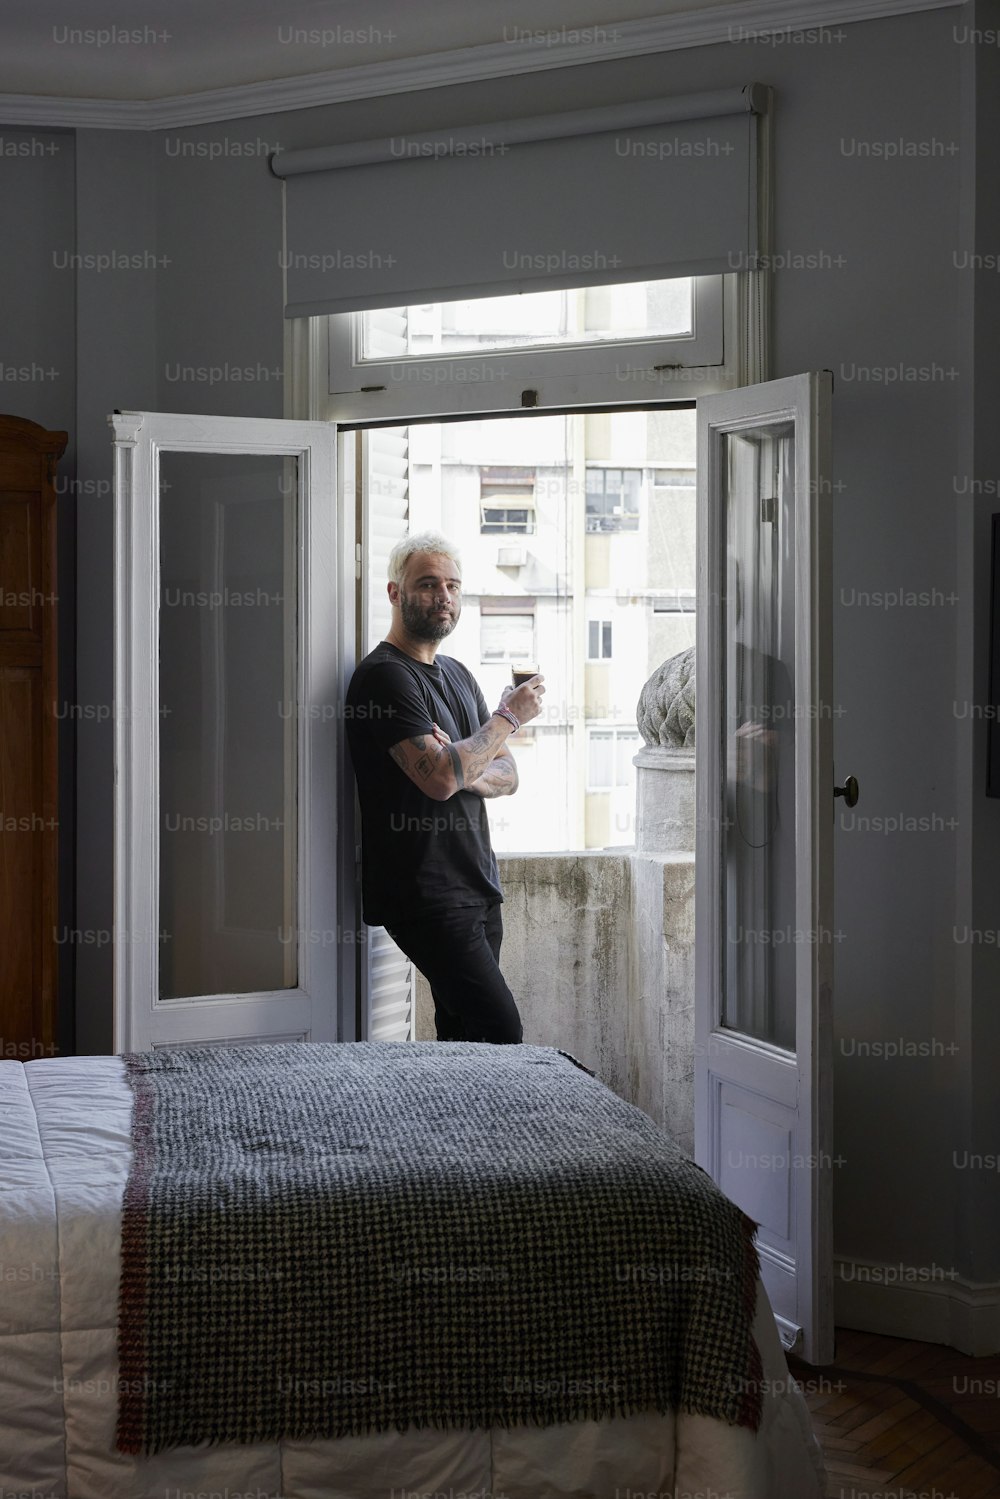 Un hombre parado en un dormitorio mirando por una ventana